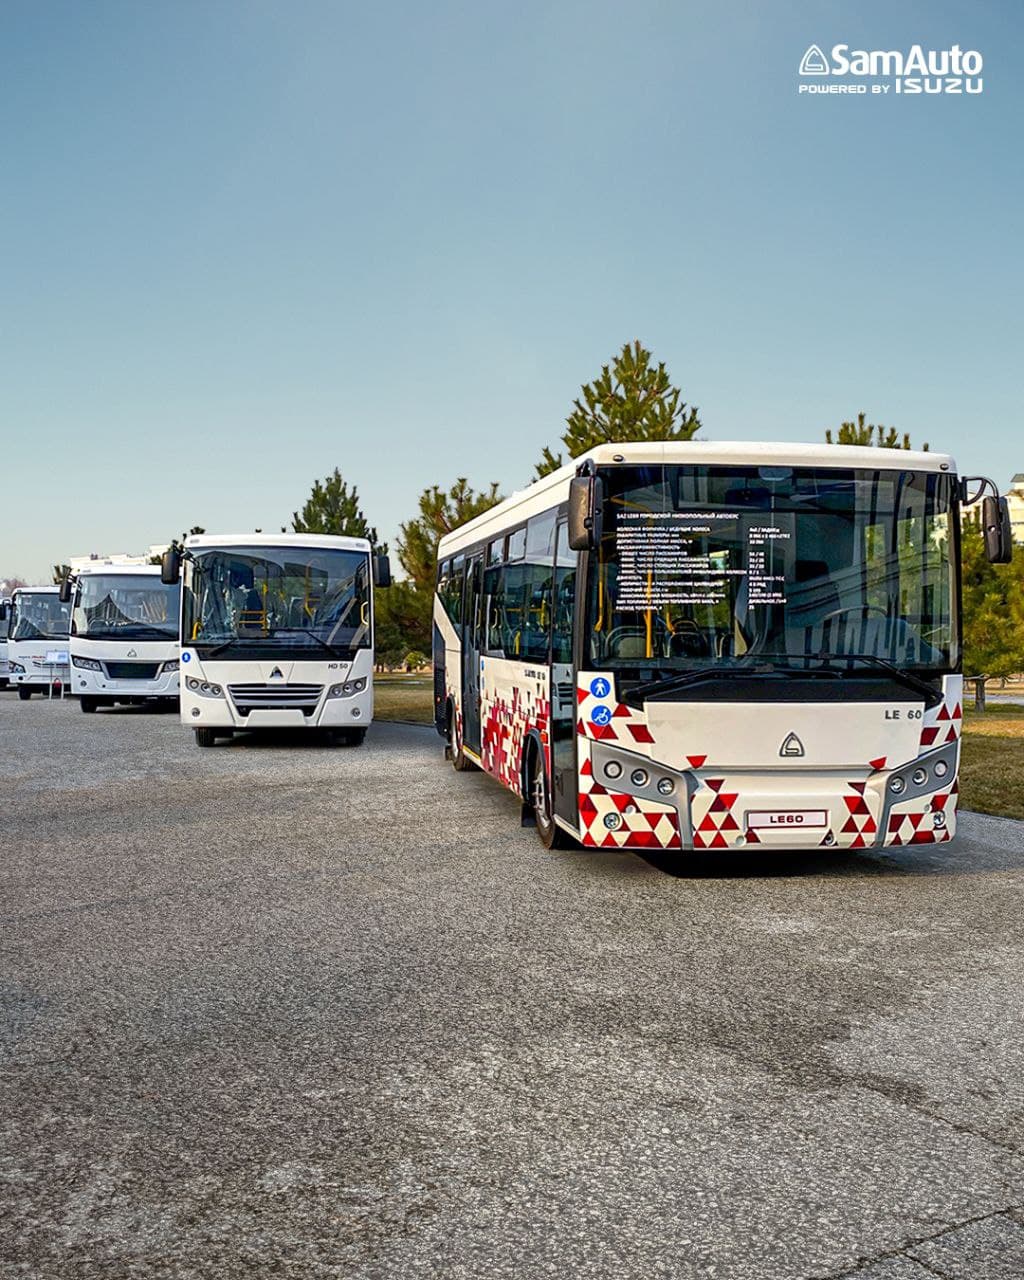 Самаркандский автомобильный завод «СамАвто» представит свои новинки моделей автобусов на выставке COMTRANS 2021